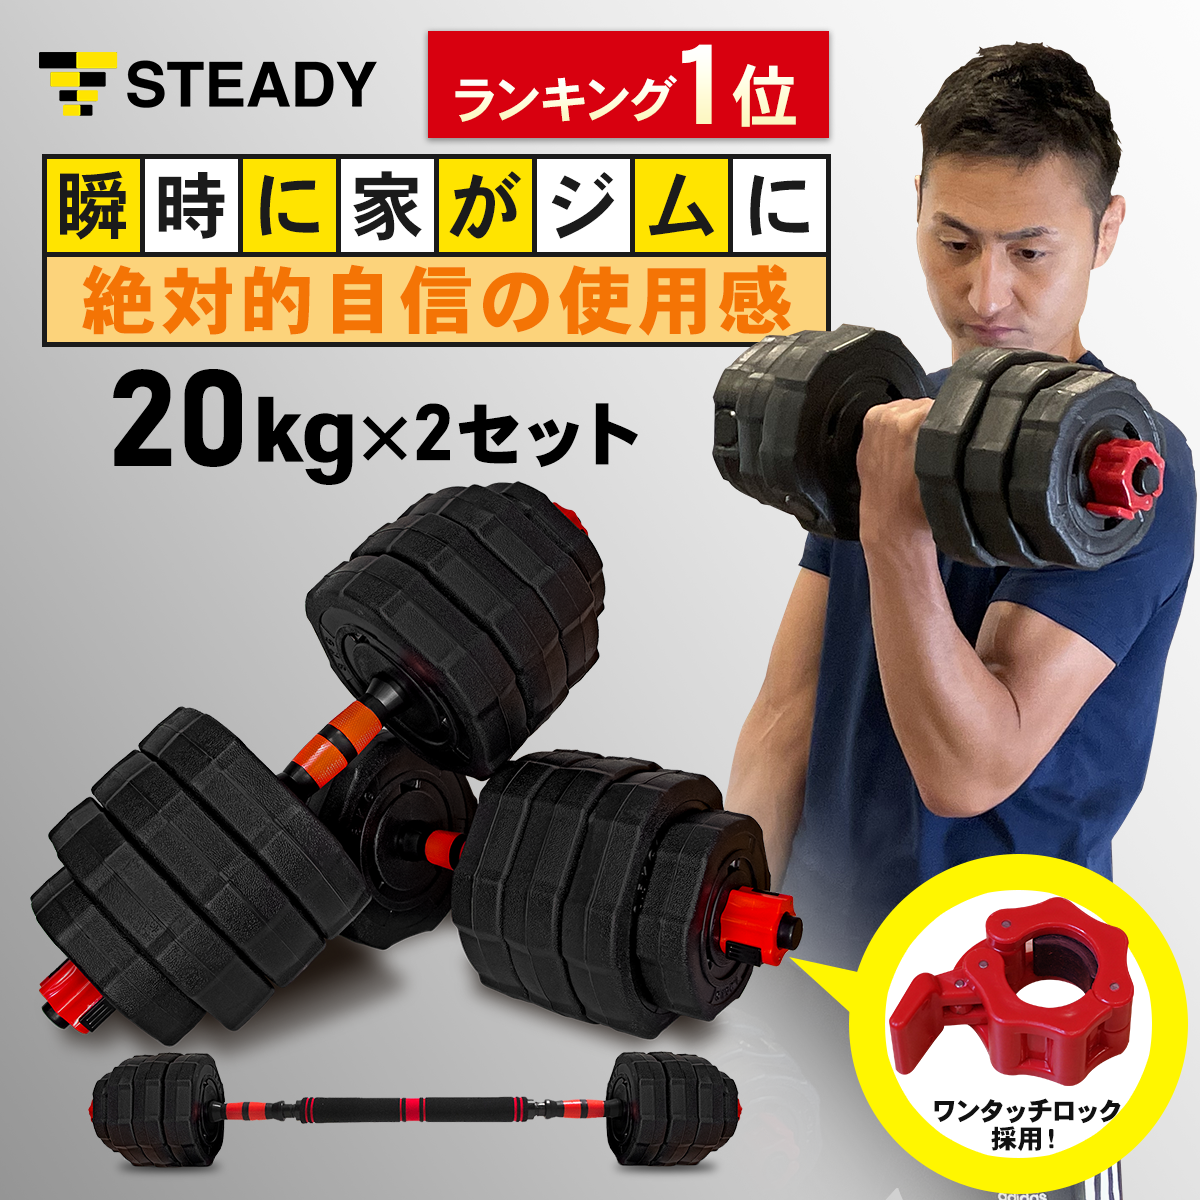 ダンベル 可変式 40kg 鉄アレイ アジャスタブルダンベル 筋トレ 450トレーニング用品